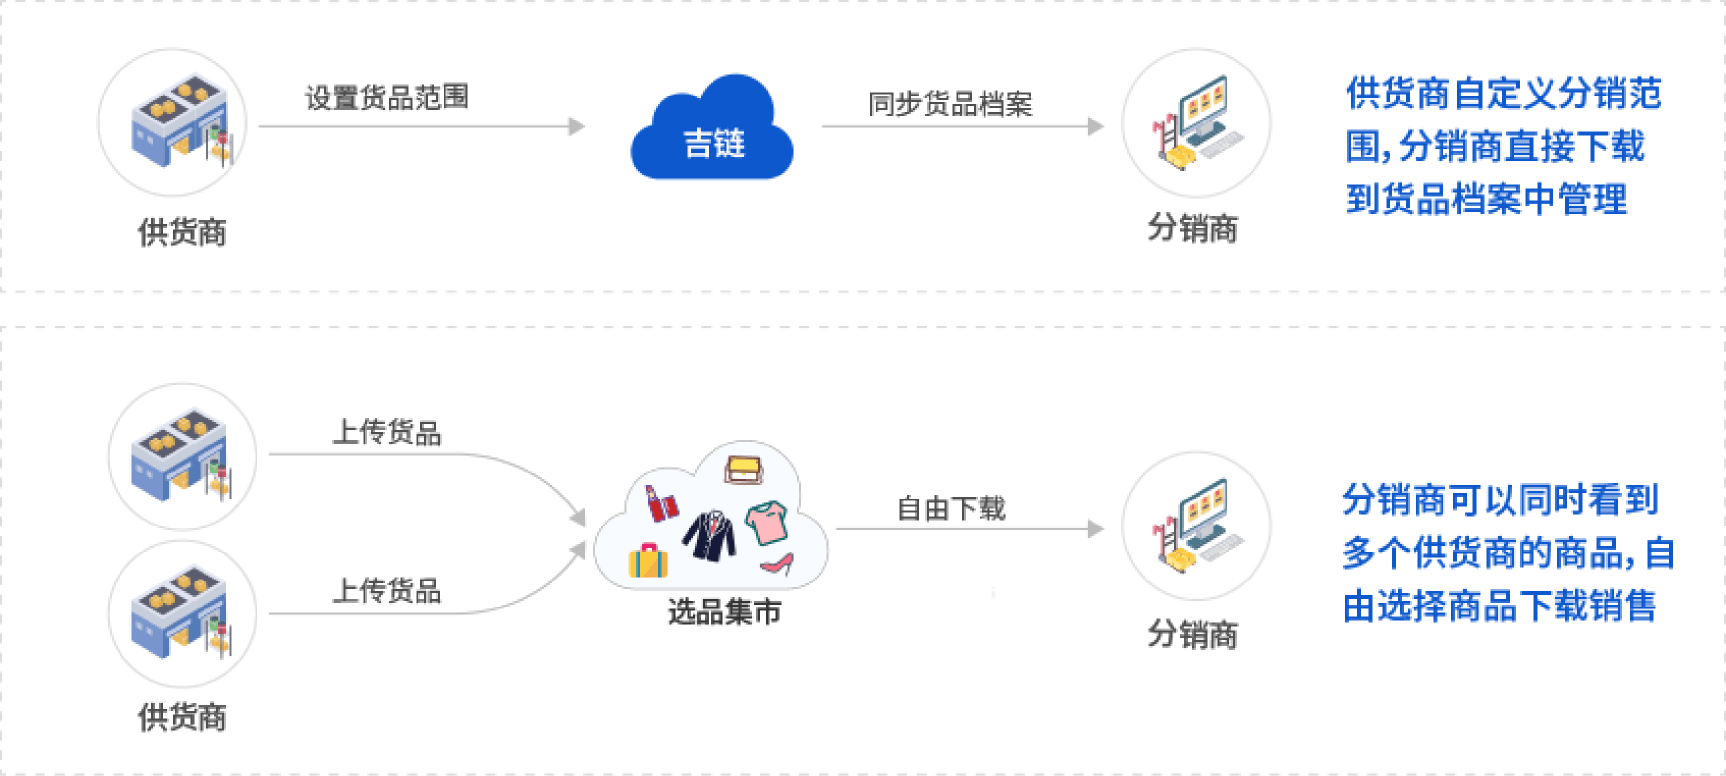 吉客云供应商管理系统商品分发流程图